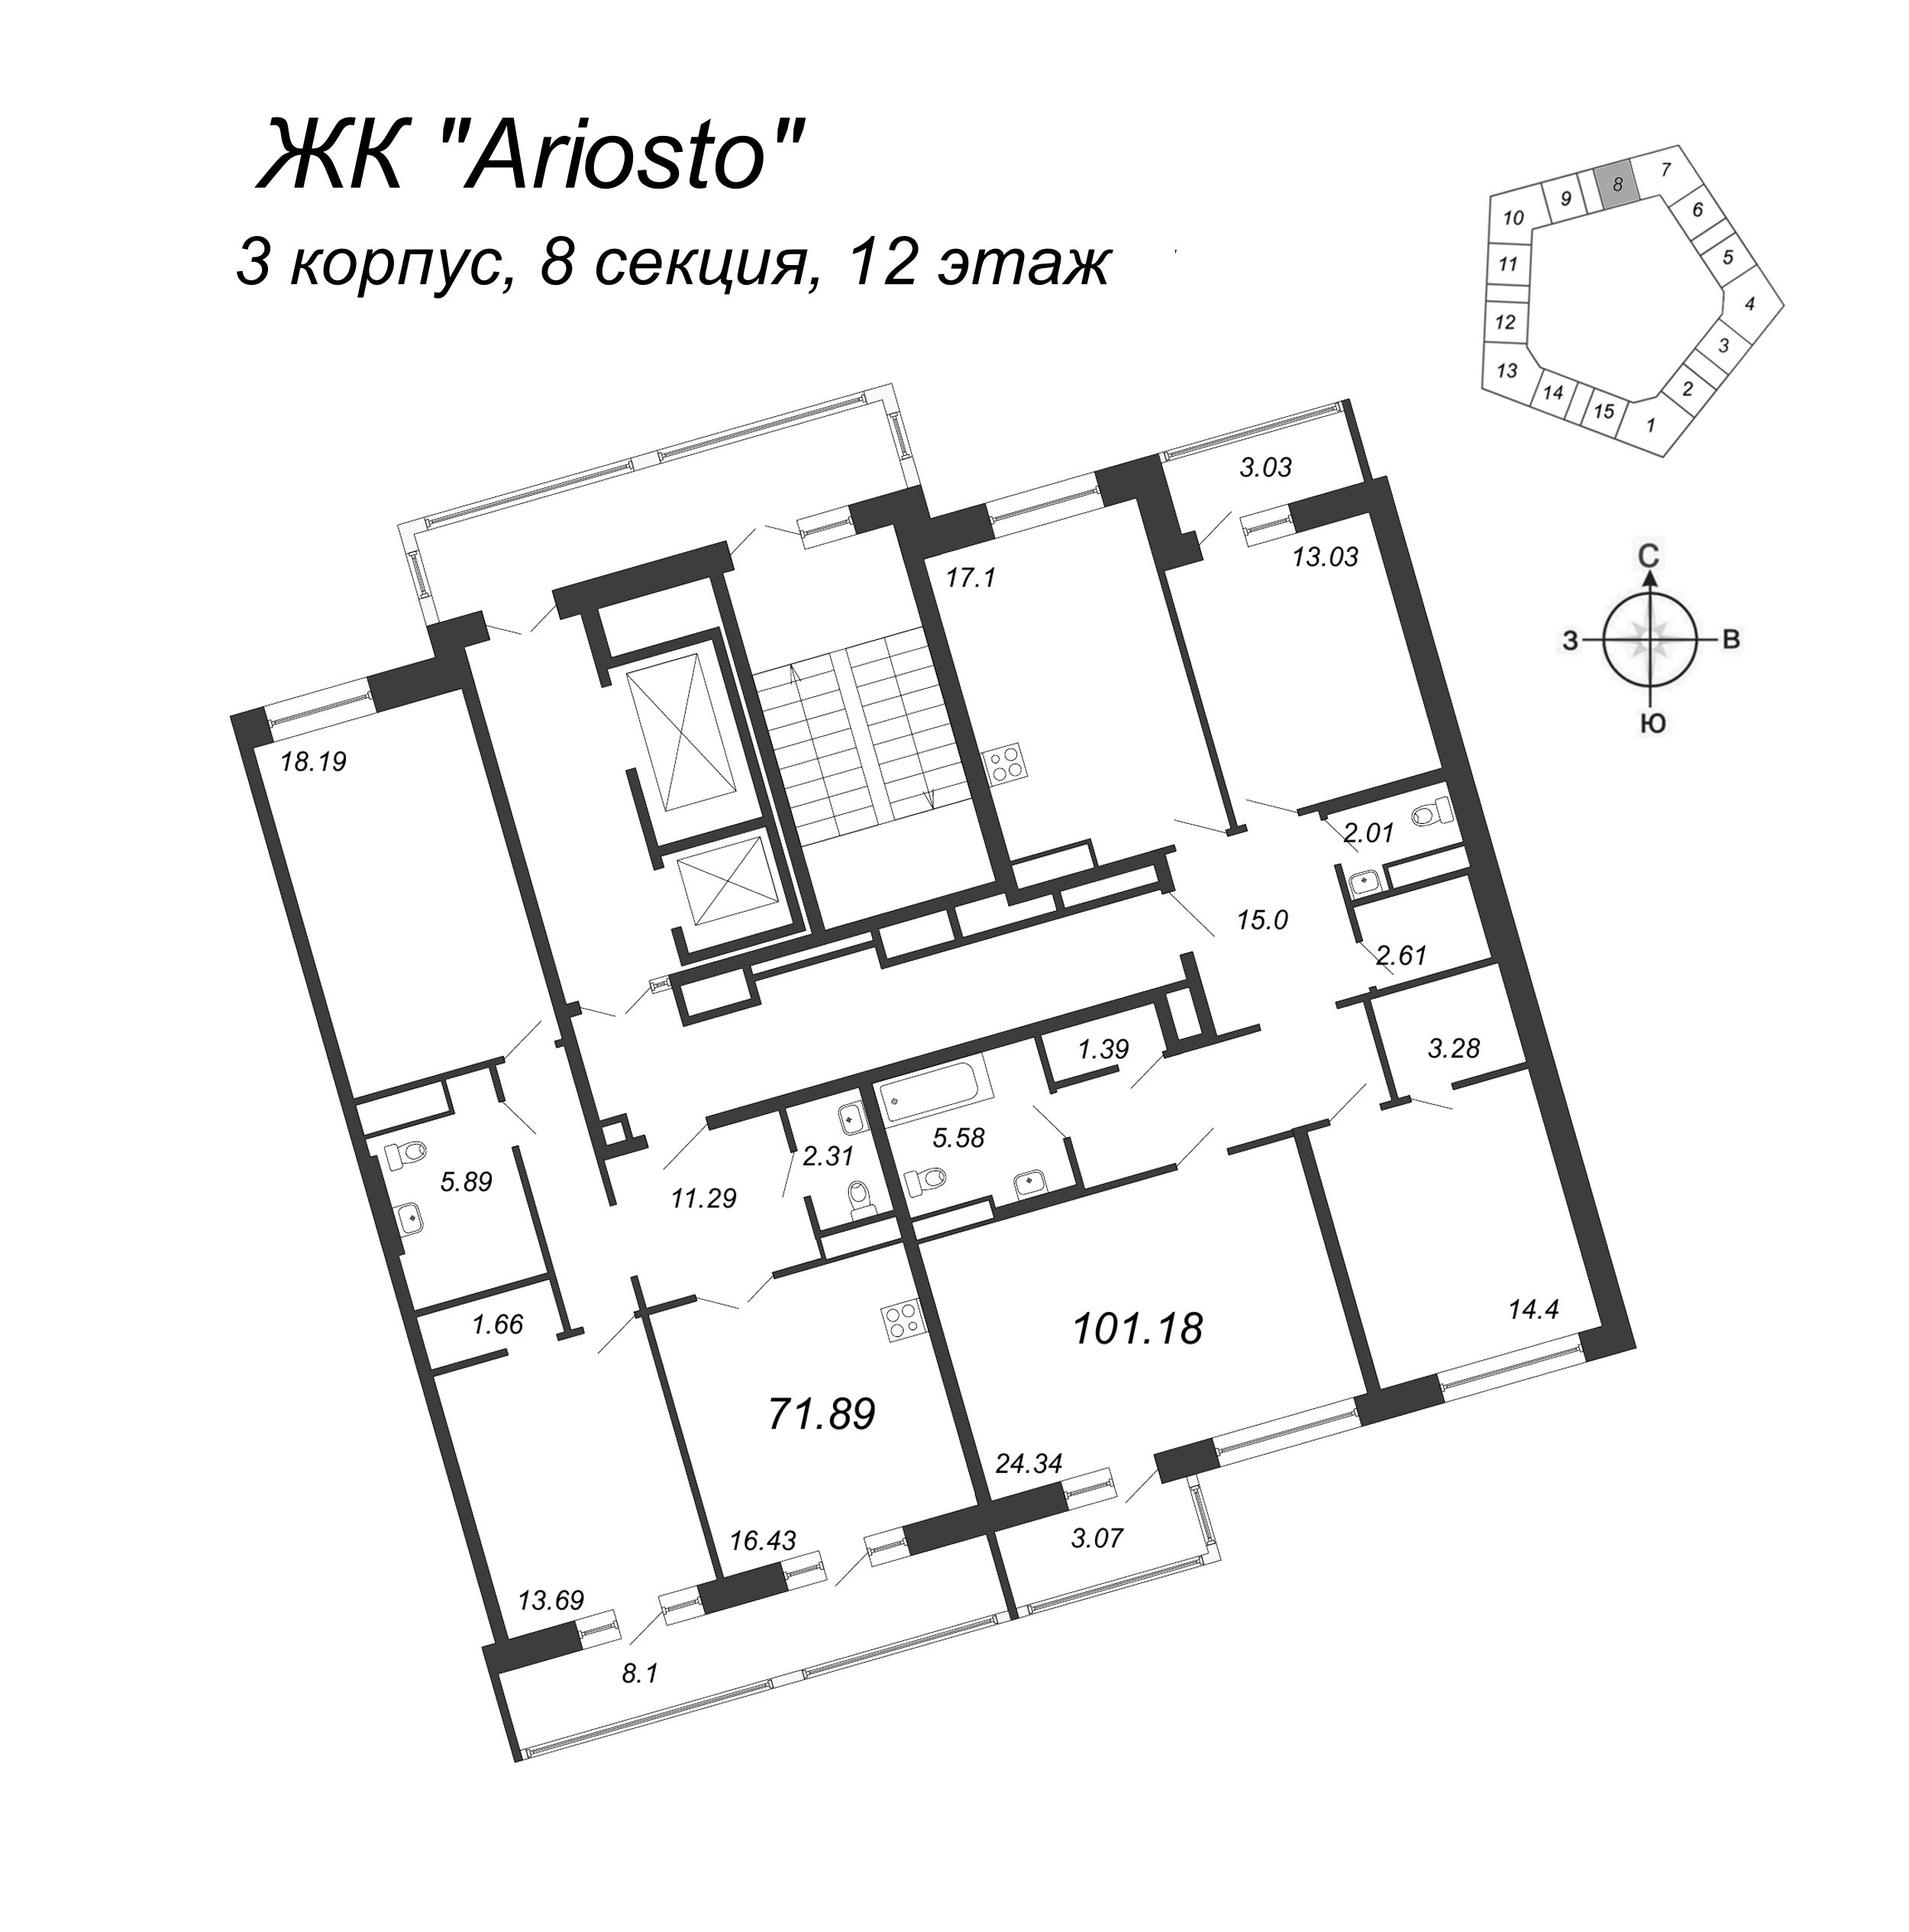 3-комнатная квартира, 101.18 м² в ЖК "Ariosto" - планировка этажа